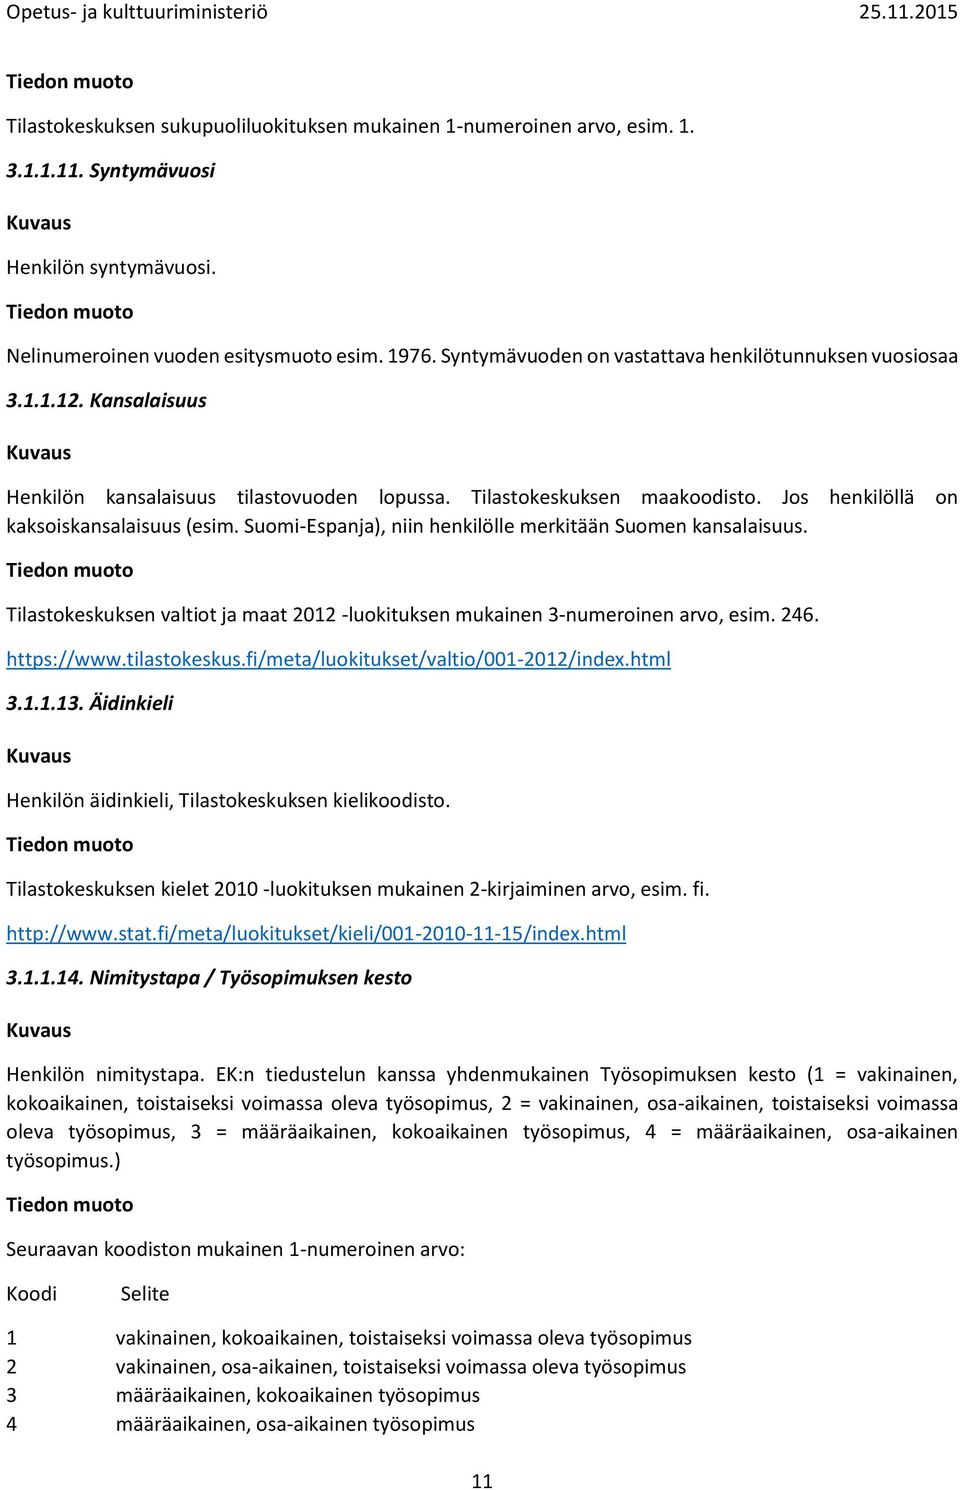 Suomi-Espanja), niin henkilölle merkitään Suomen kansalaisuus. Tilastokeskuksen valtiot ja maat 2012 -luokituksen mukainen 3-numeroinen arvo, esim. 246. https://www.tilastokeskus.